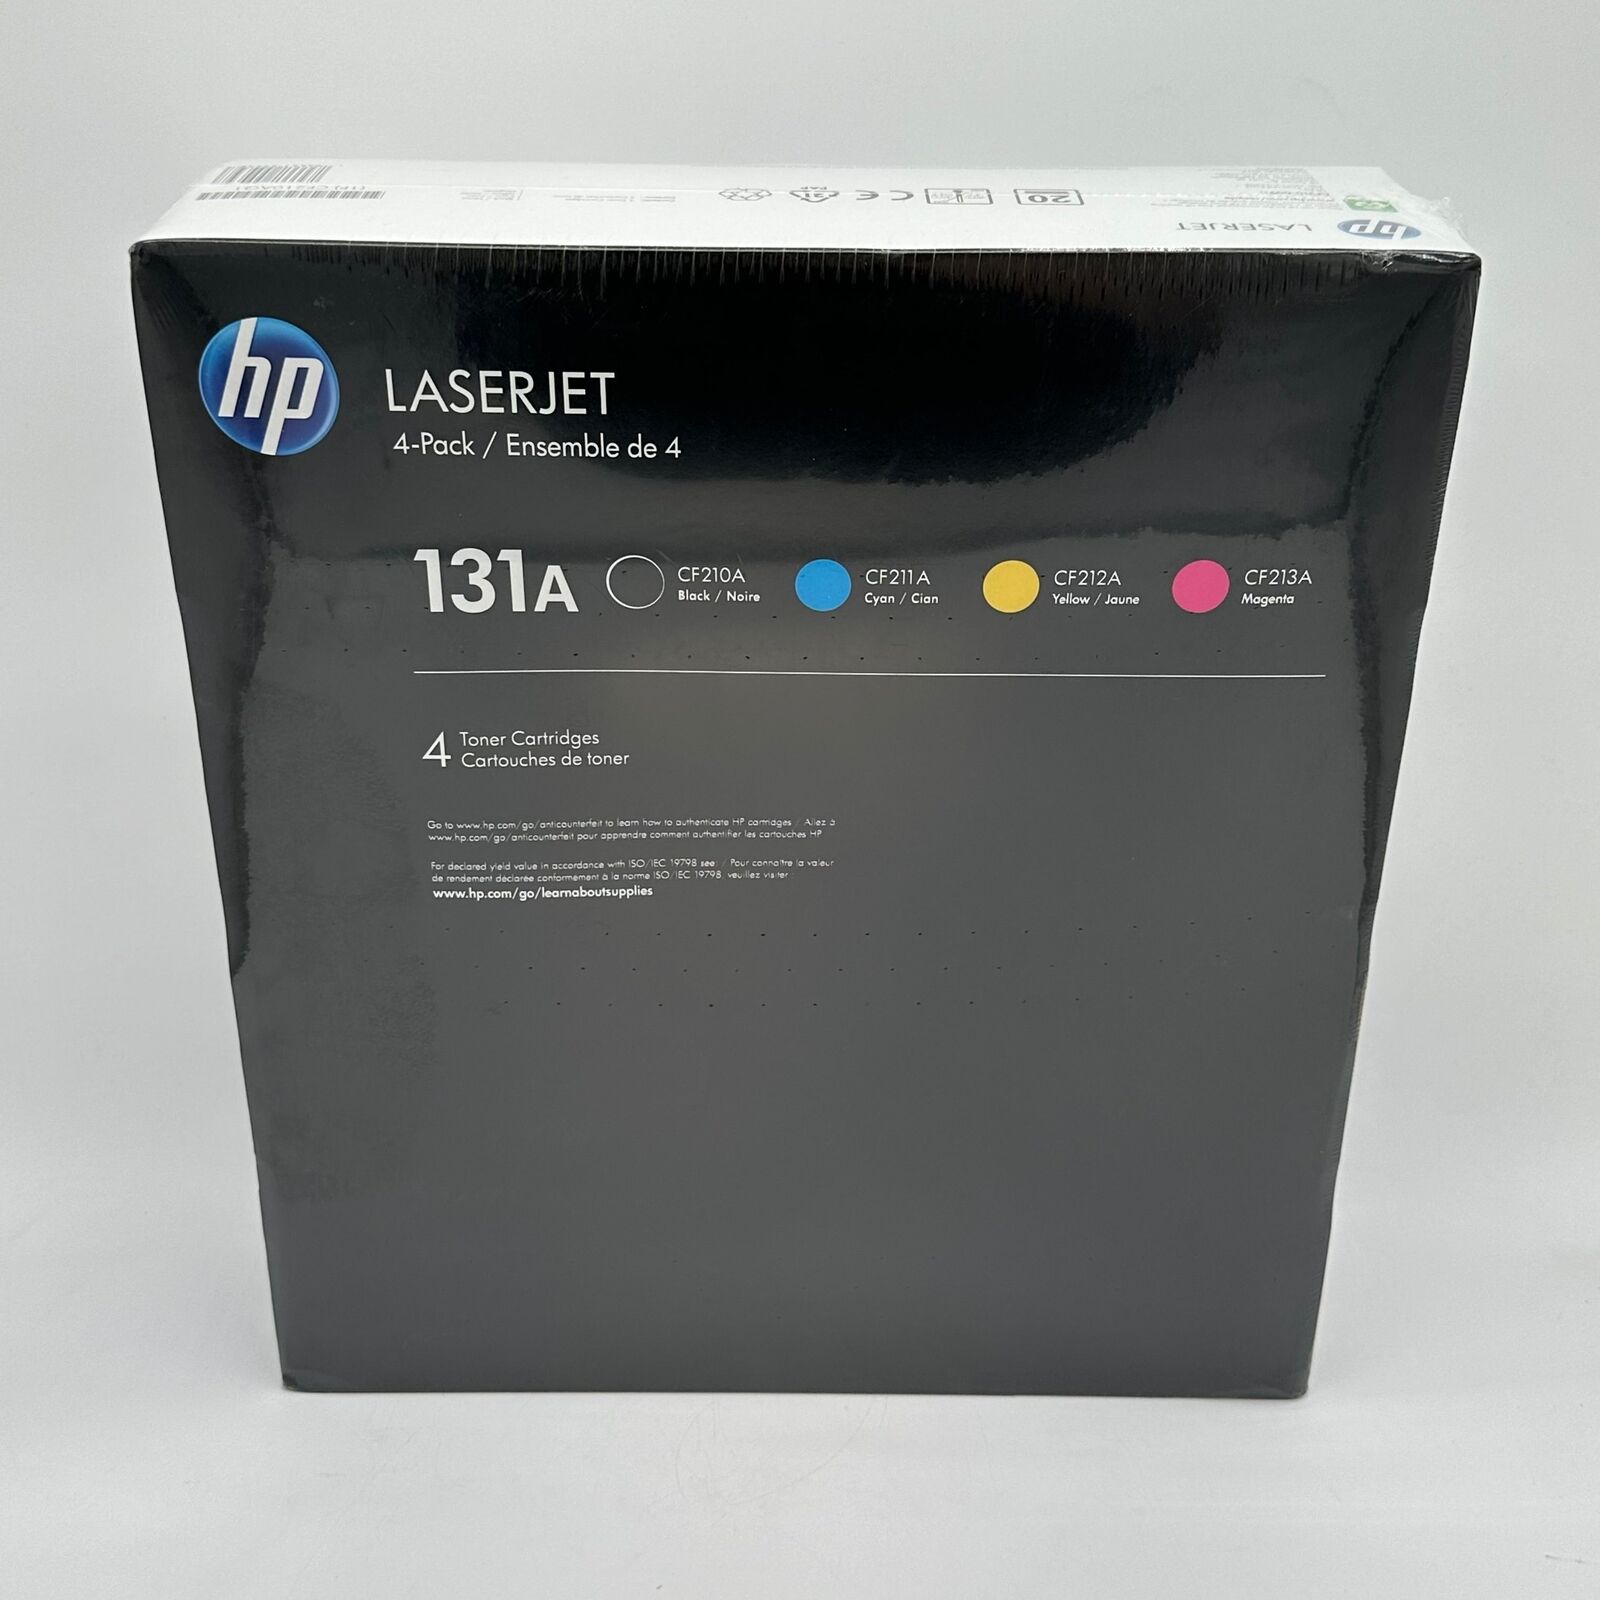 New HP LaserJet 131A Multi-Pack Toner Cartridges